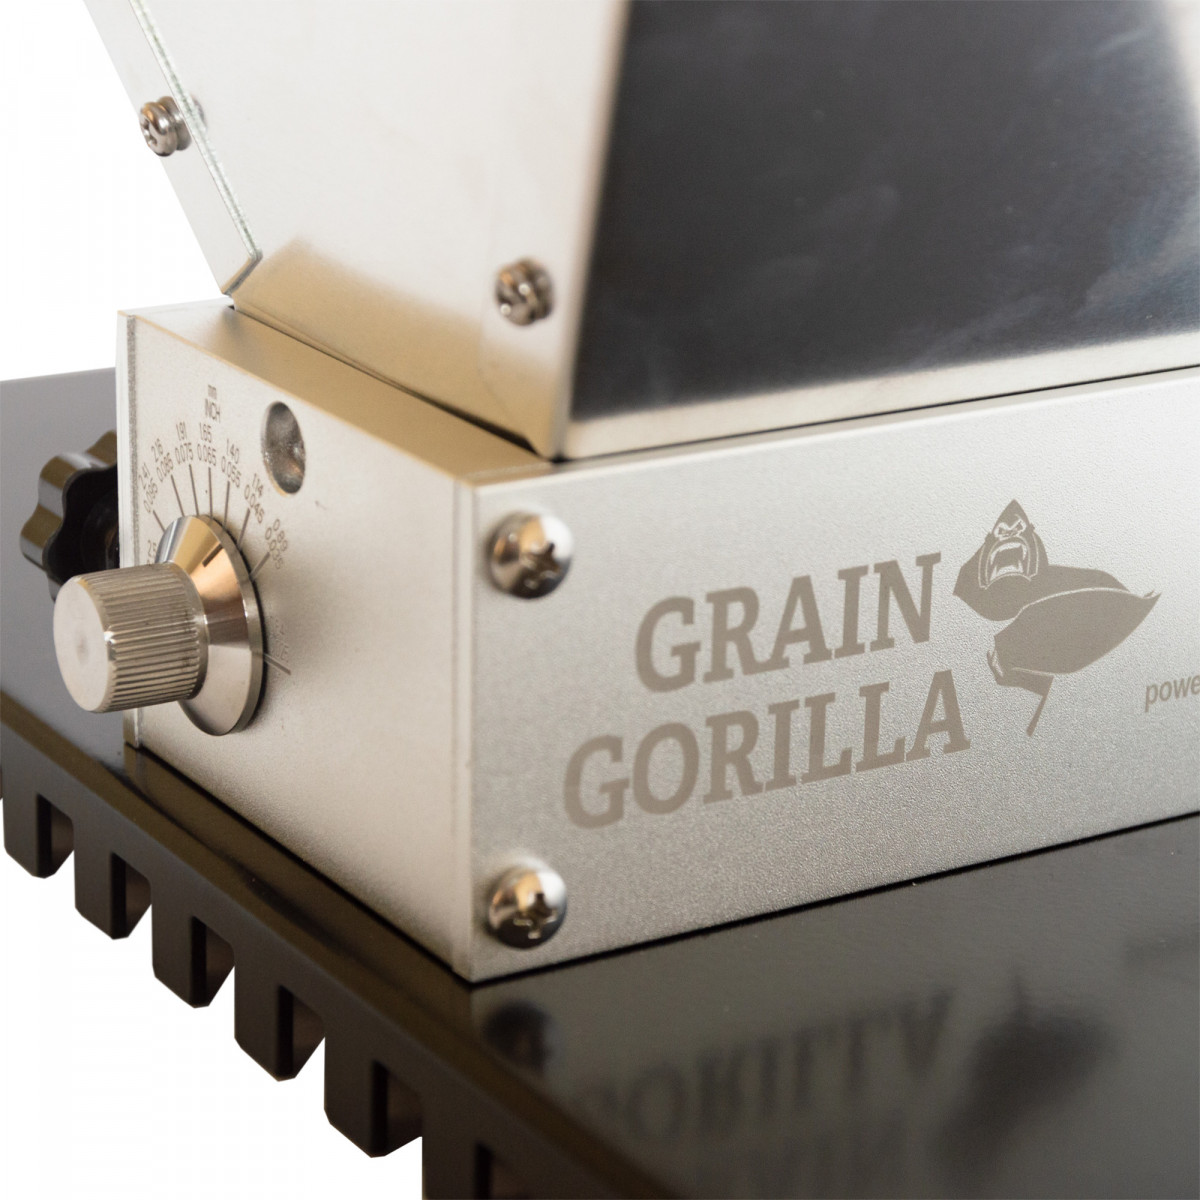 Brewferm Grain Gorilla moutmolen met verstelbare rvs rollen